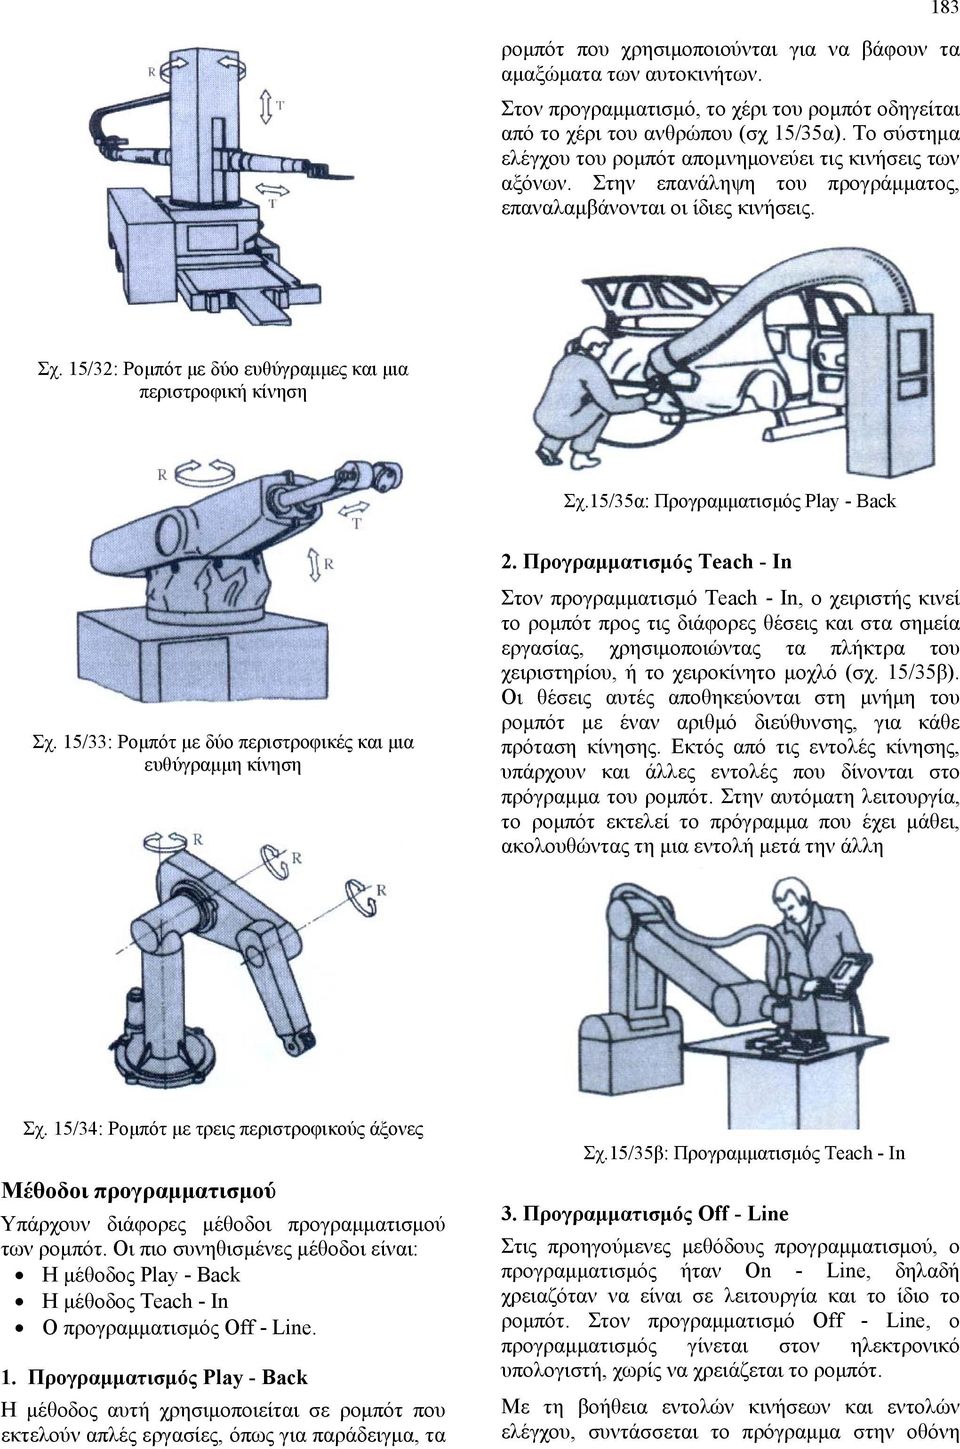 15/32: Ρομπότ με δύο ευθύγραμμες και μια περιστροφική κίνηση Σχ.15/35α: Προγραμματισμός Play - Back Σχ. 15/33: Ρομπότ με δύο περιστροφικές και μια ευθύγραμμη κίνηση 2.